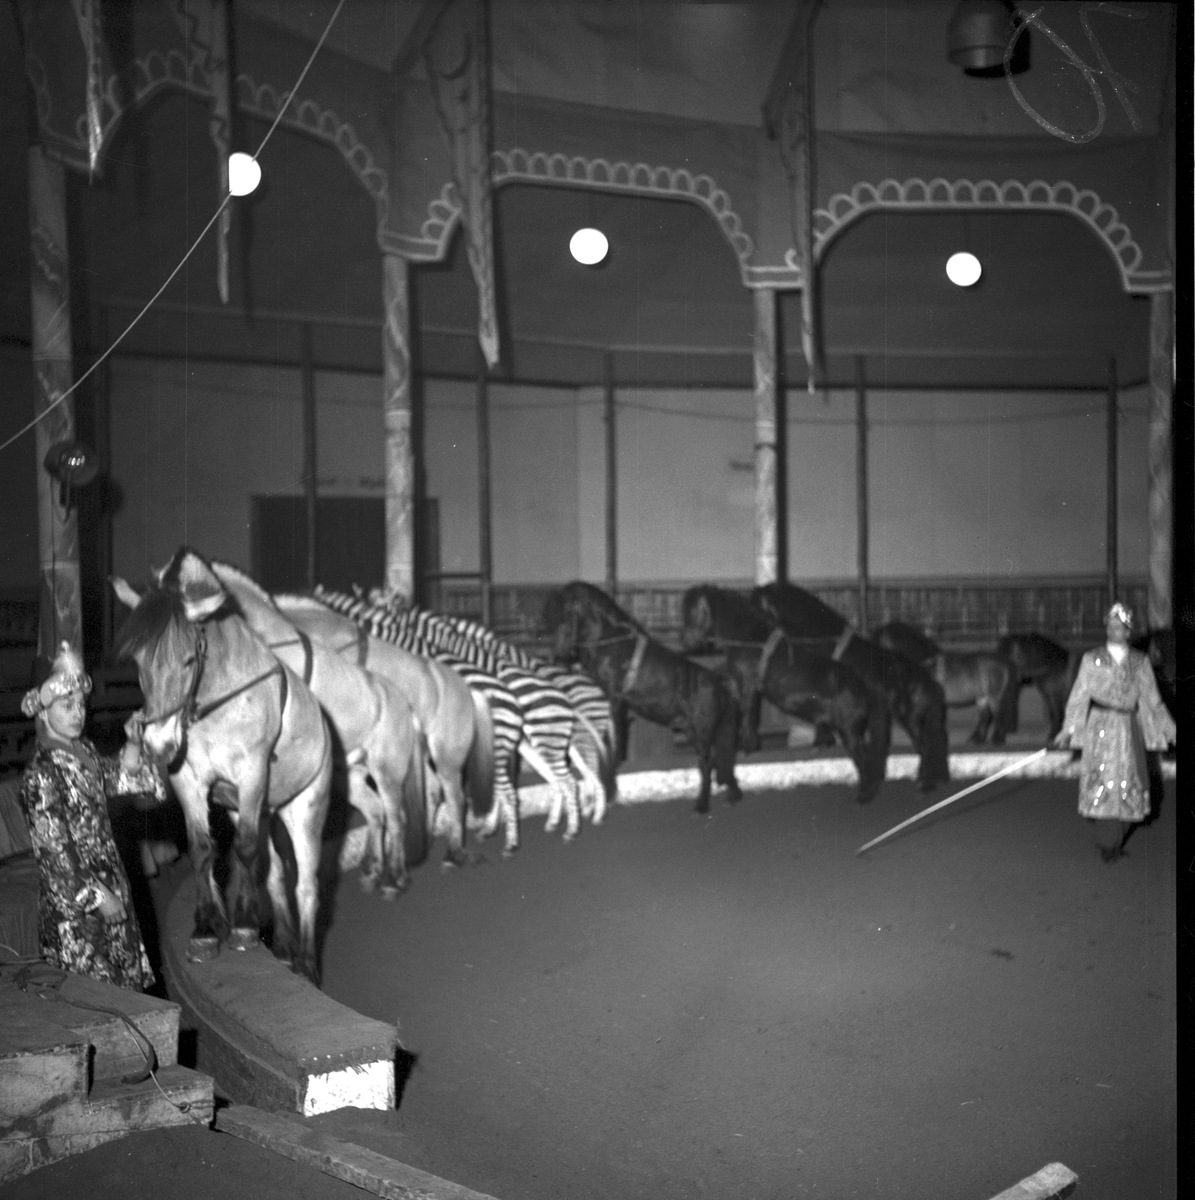 Furuviksparken invigdes 1936
Folkdanslaget Furuviks Ungdomslag och Barnkabarén blev Furuviksbarnen.
Ungdomscirkusen med hästar och zebror
Cirkusbyggnaden  Teater-Cirkus med cirka 600 platser, uppförd 1940.













